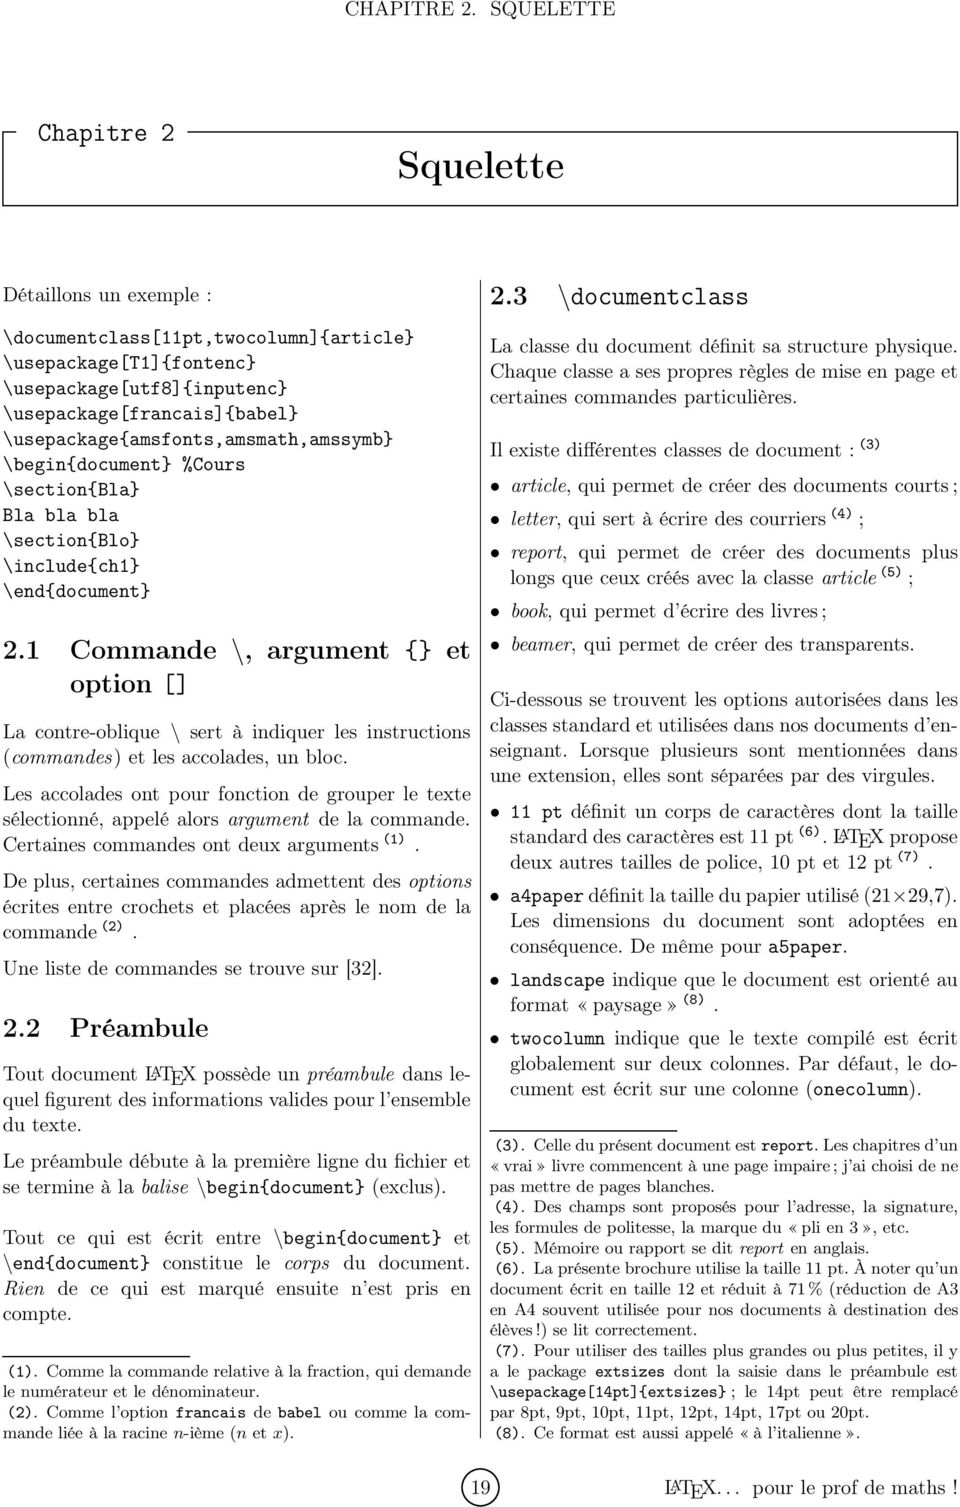 Latex Pour Le Prof De Maths Pdf Free Download